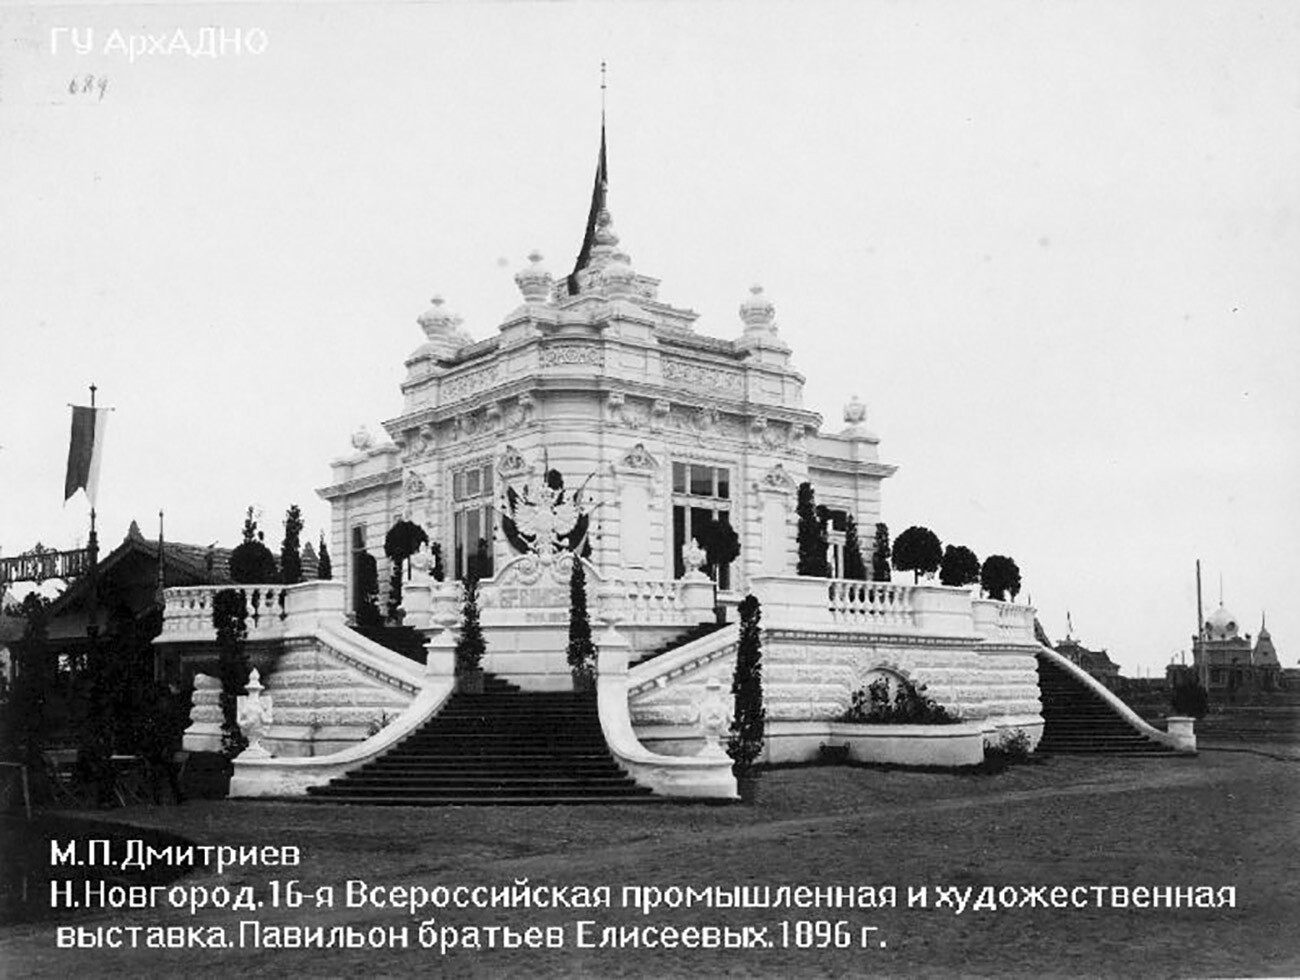 The Yeliseyev Merchants’ Pavilion